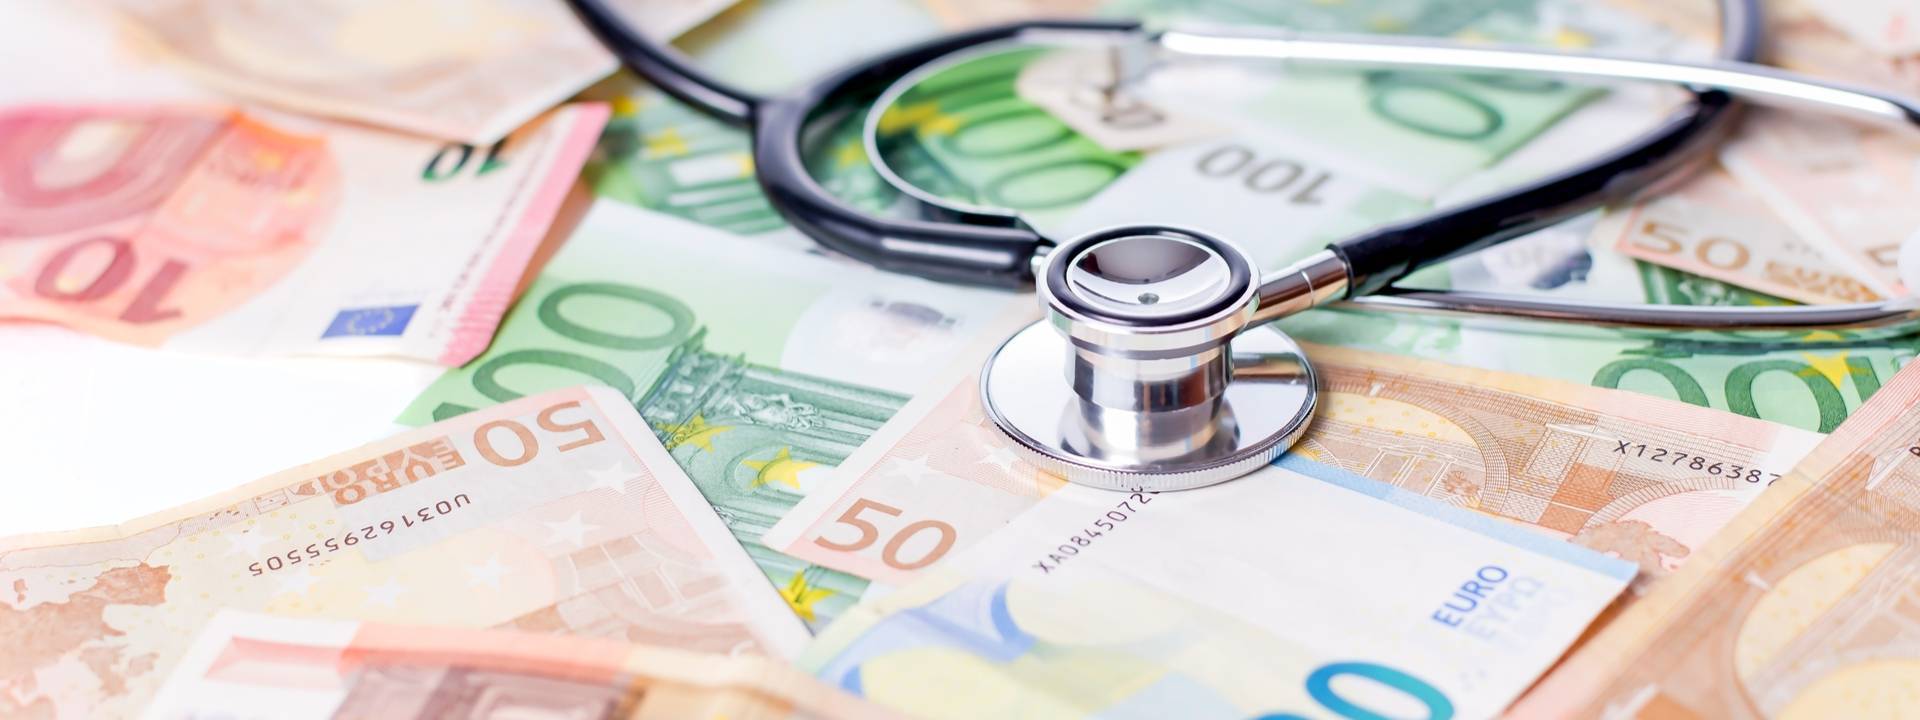 Kosten einer Abtreibung in Österreich